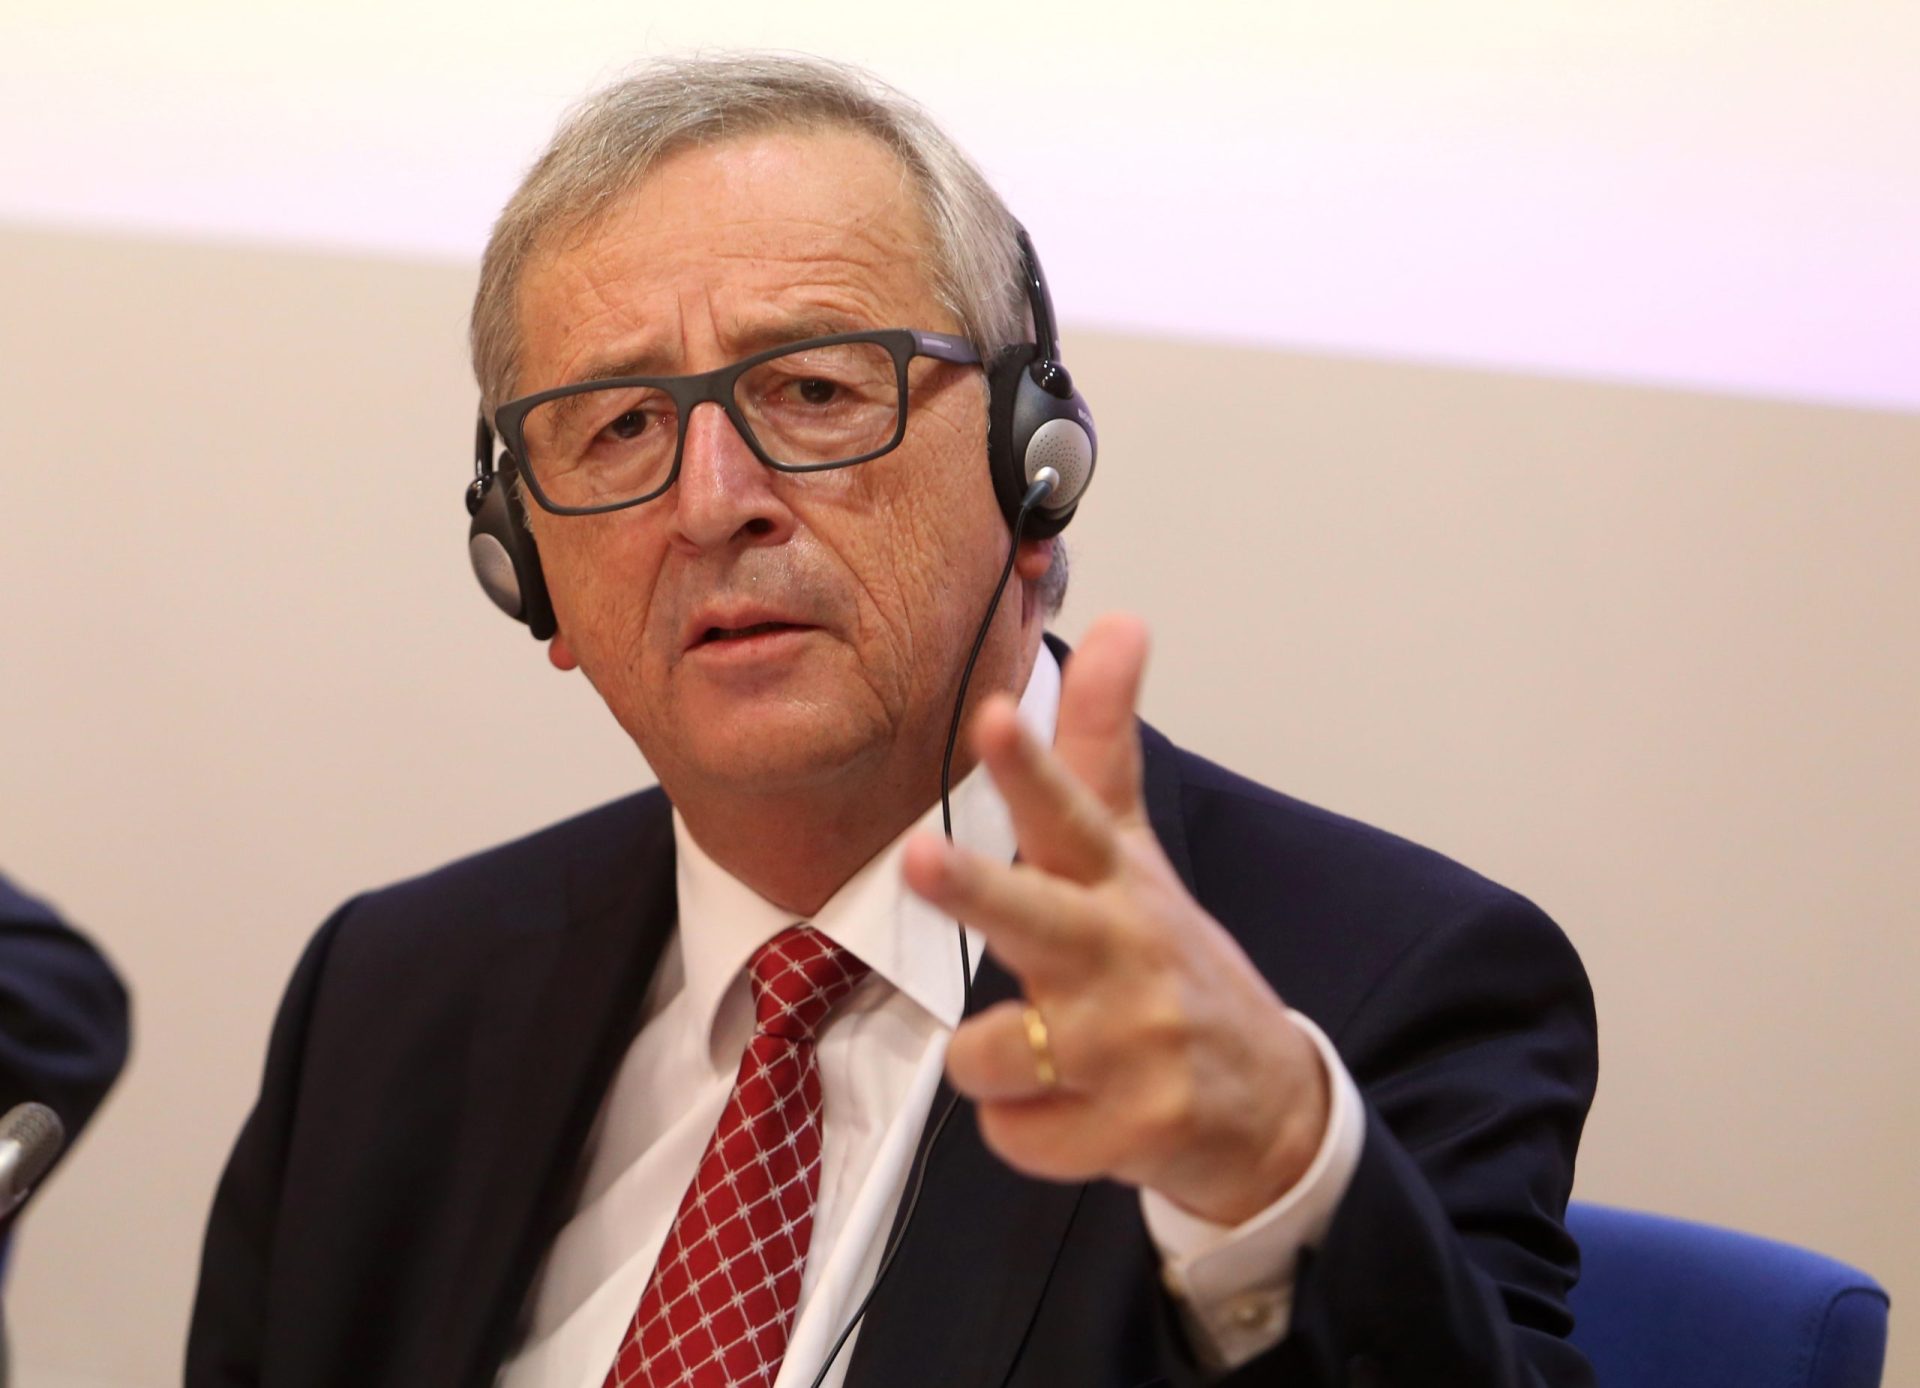 Eleição de Trump traz riscos para a relação entre UE e EUA, diz Juncker